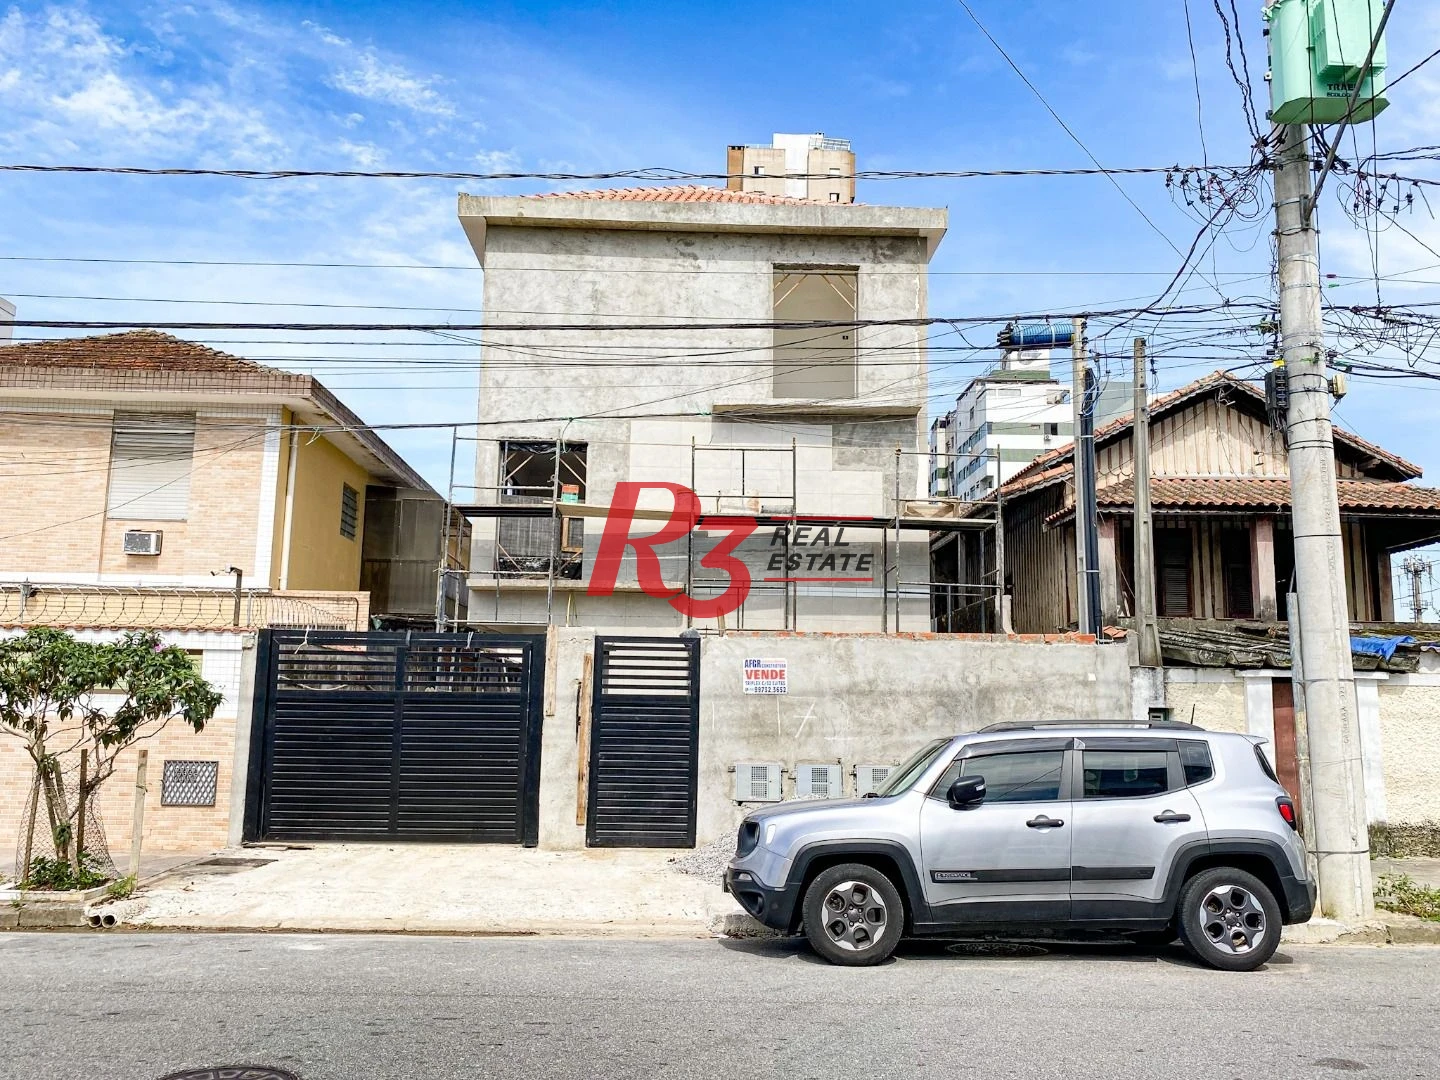 Sobrado triplex  à venda  em villagio no bairro do Macuco. 94 m², 2 suítes, vaga para carro e moto e espaço com churrasqueira !